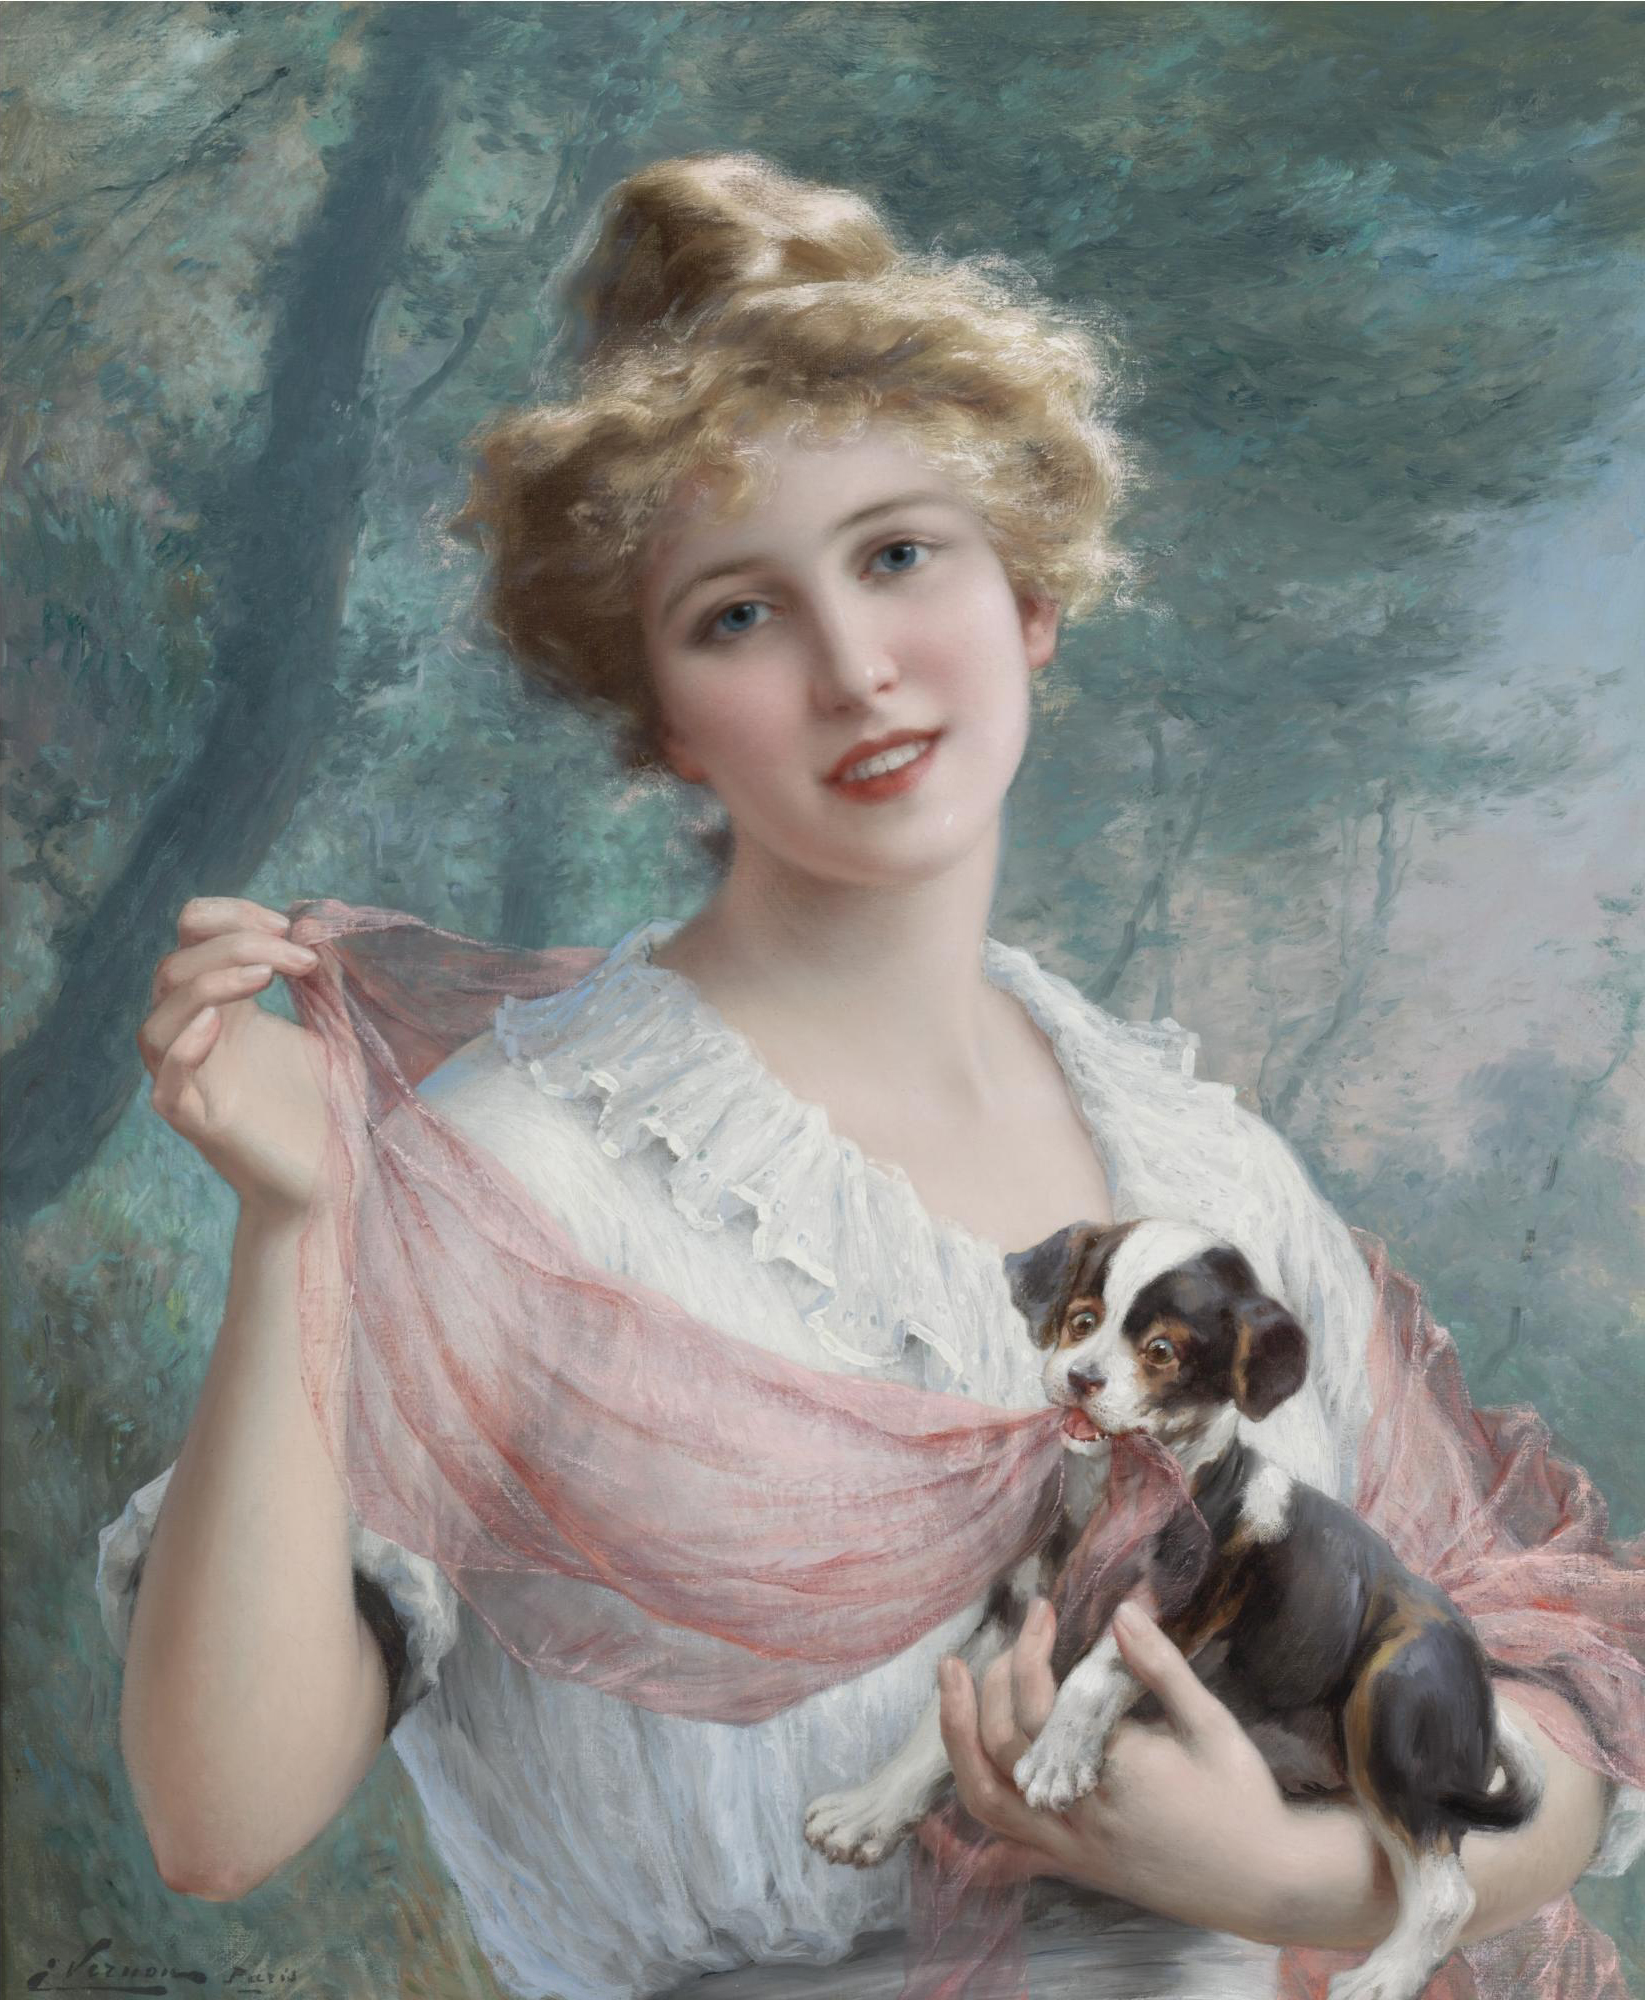 Картины знаменитых художников. Эмиль Вернон (1872-1919). Эмиль Вернон картины. Эмиль Вернон женские портреты. Эмиль Вернон — французский художник прекрасной эпохи (British, 1872-1919).